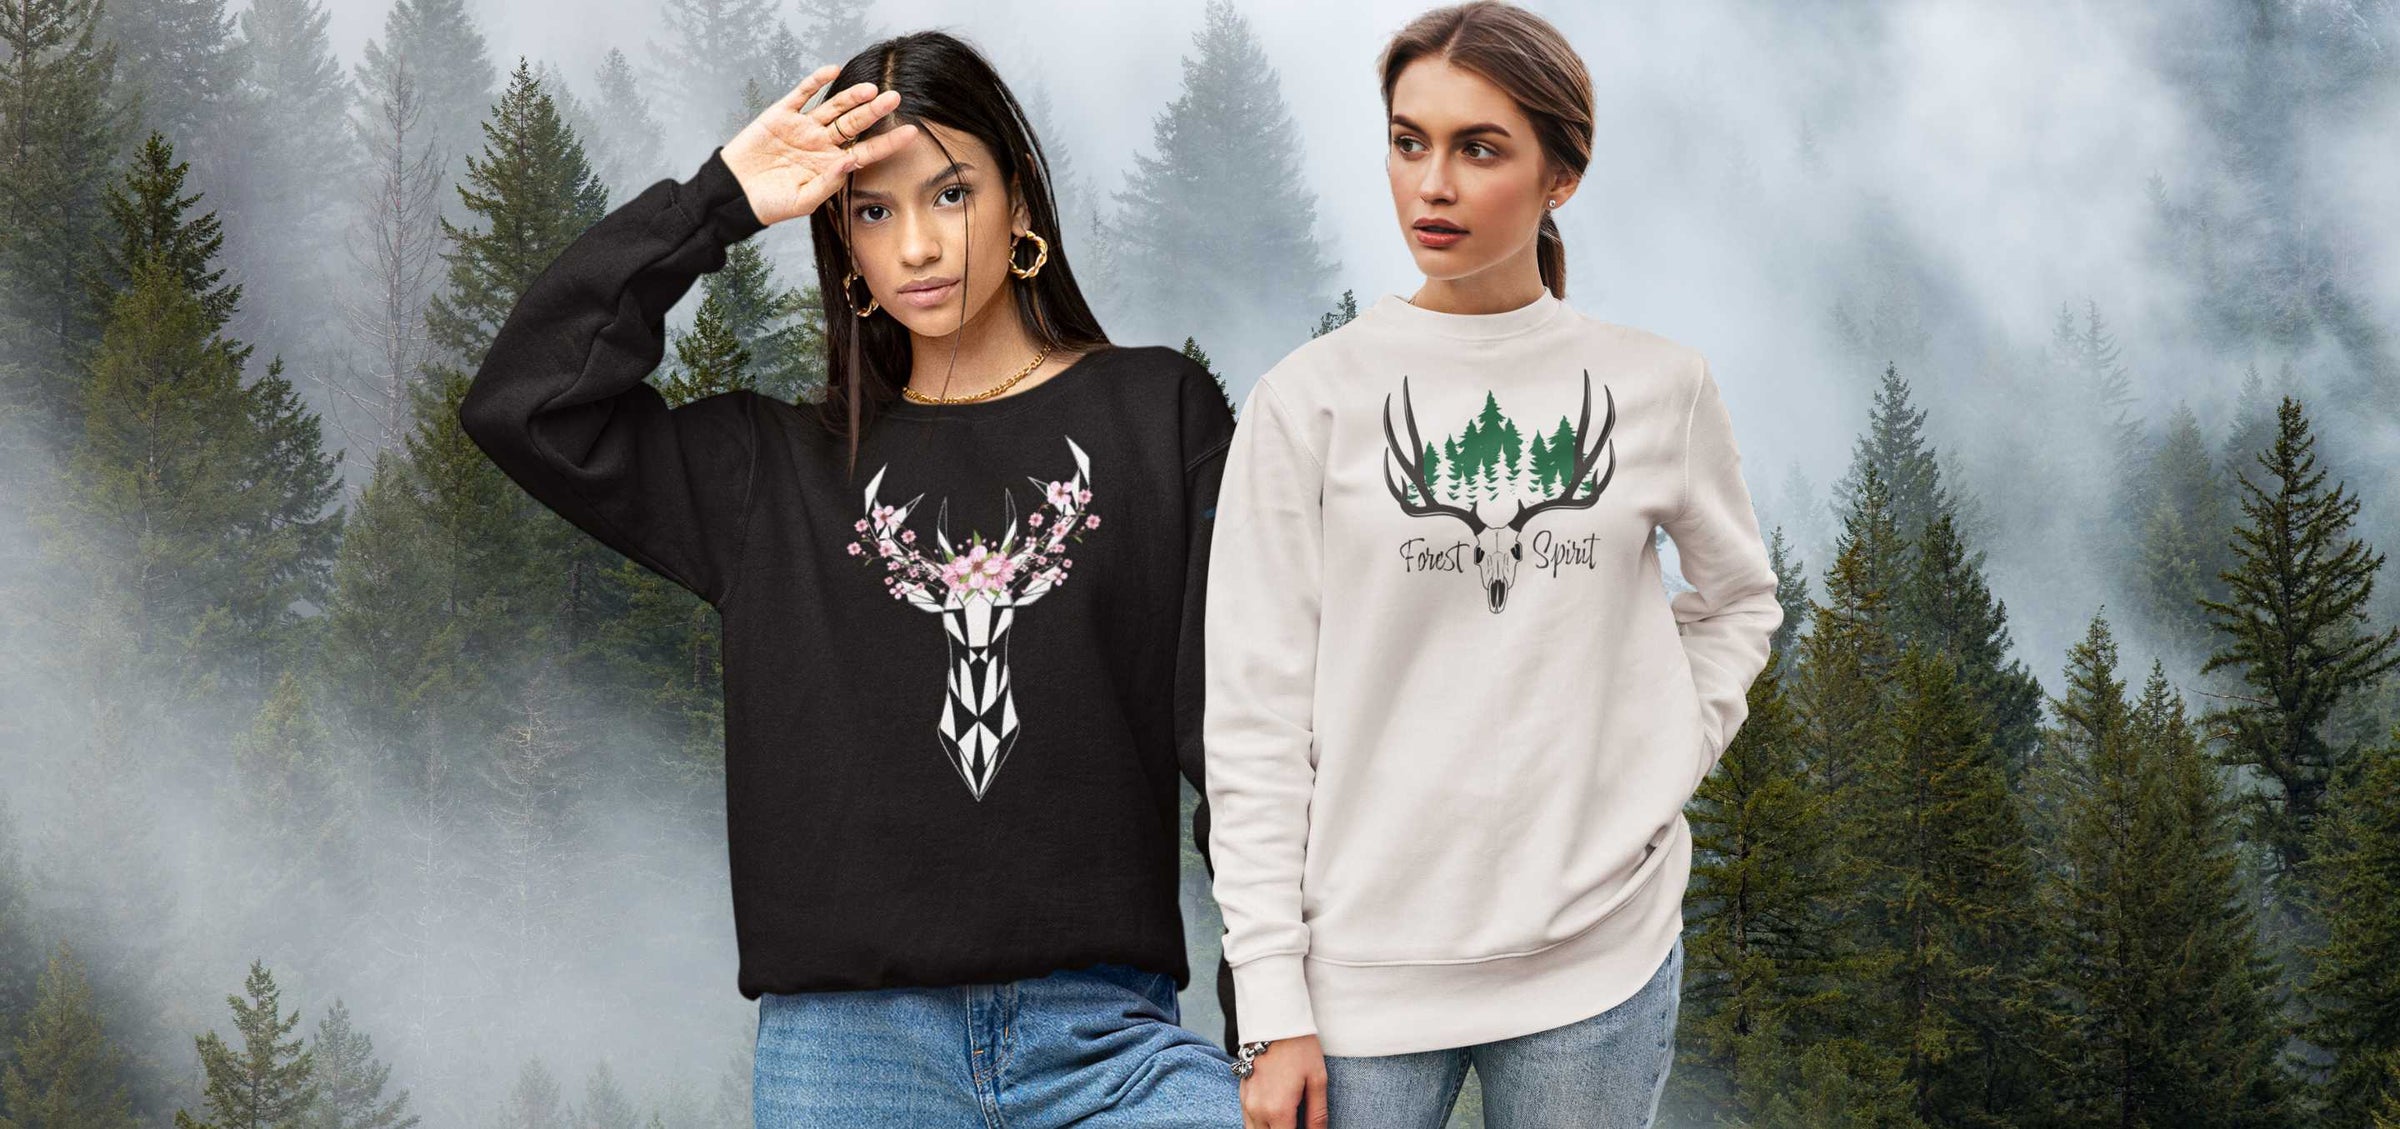 Auswahl von Damen Sweater aus der Runental Kollektion, mit Designs inspiriert von Mythologie und Fantasy.